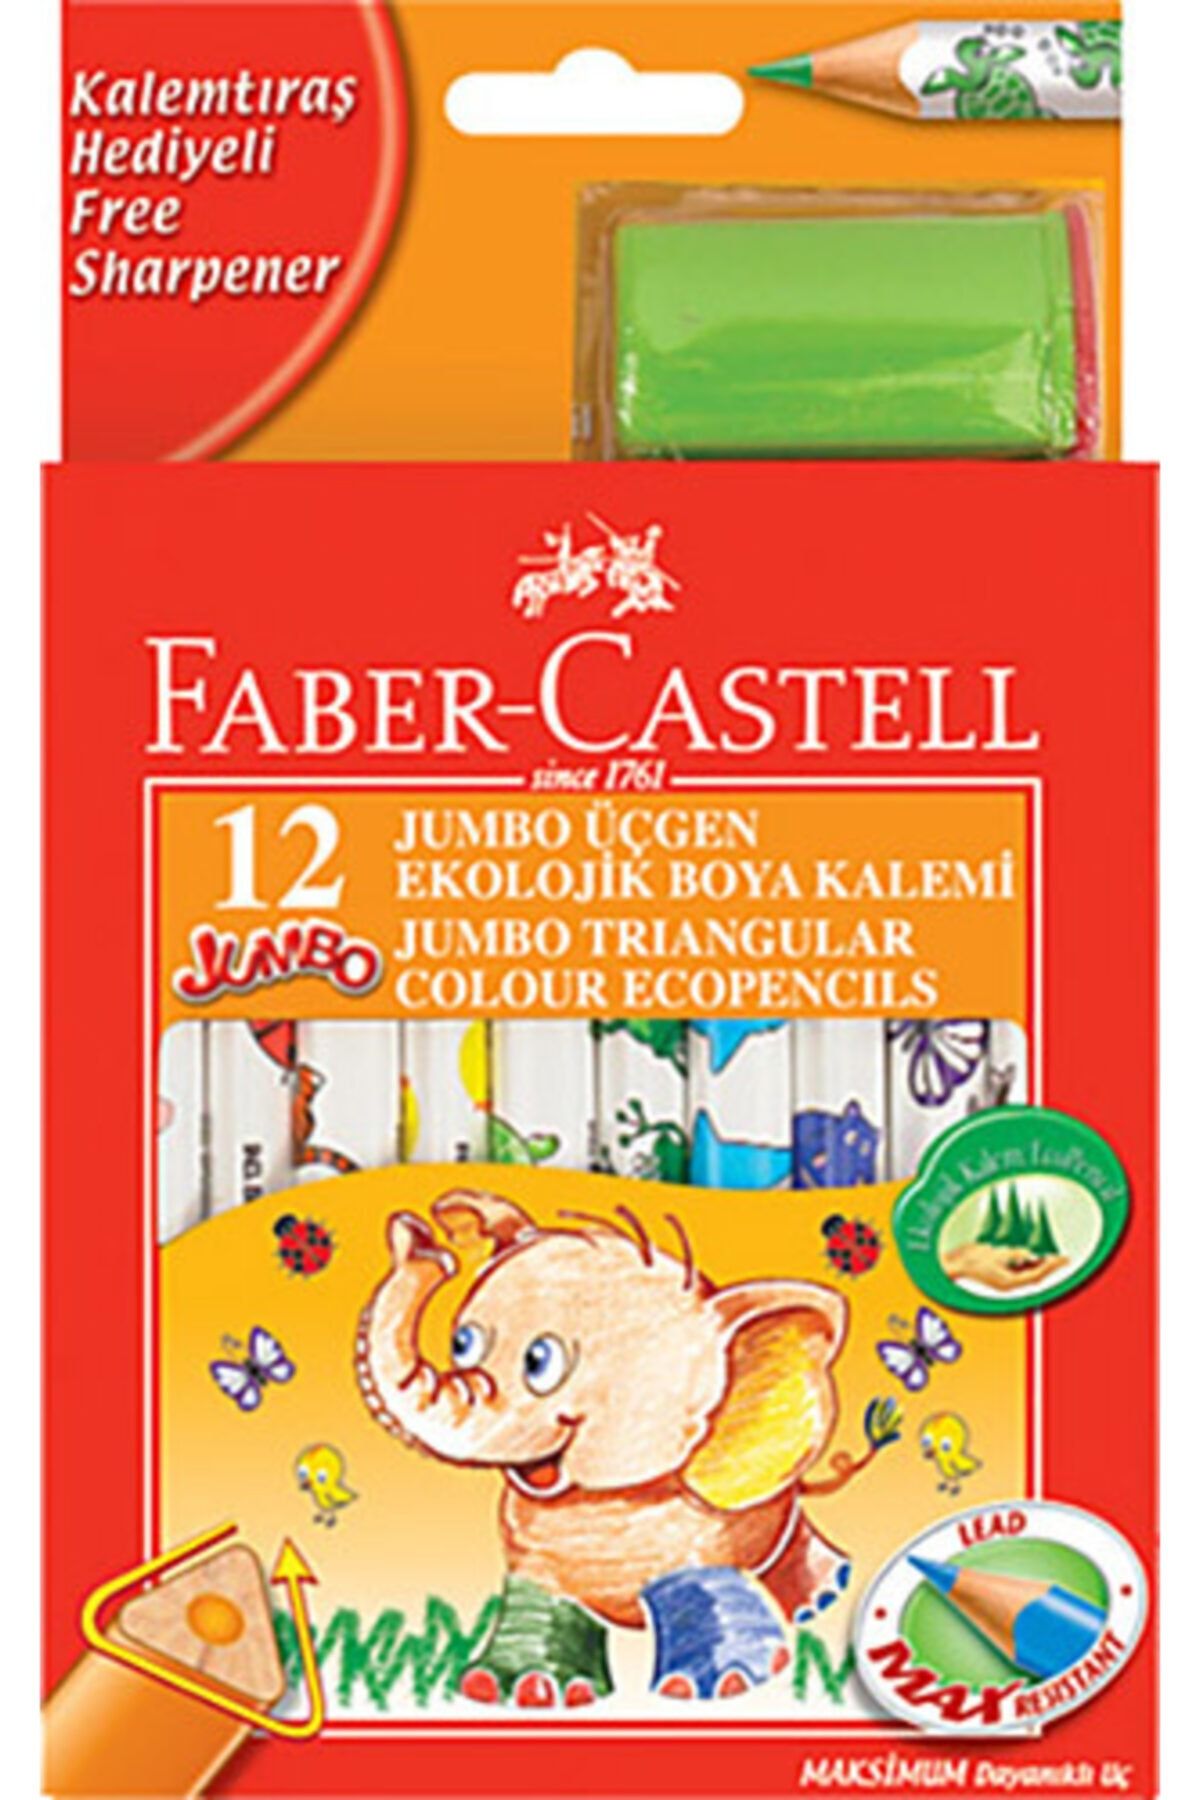 Faber Castell 12 Jumbo Üçgen Ekolojik Boya Kalemi